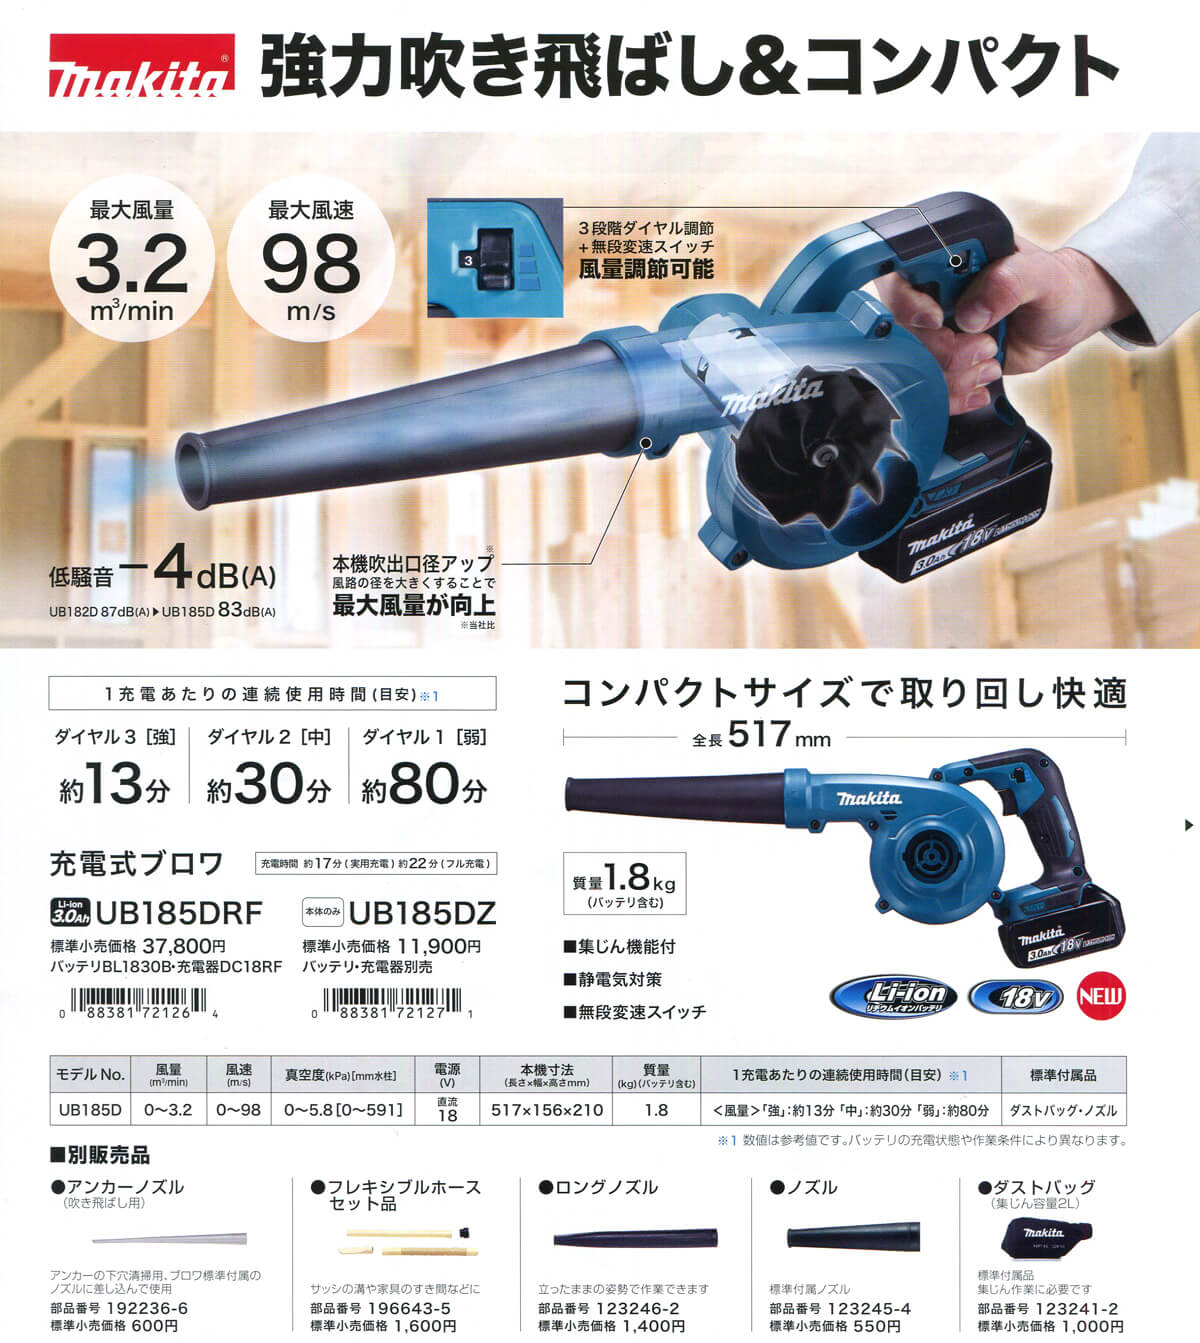 Amazon.co.jp: マキタMakita 充電式ブロワ V3Ah バッテリ・充電